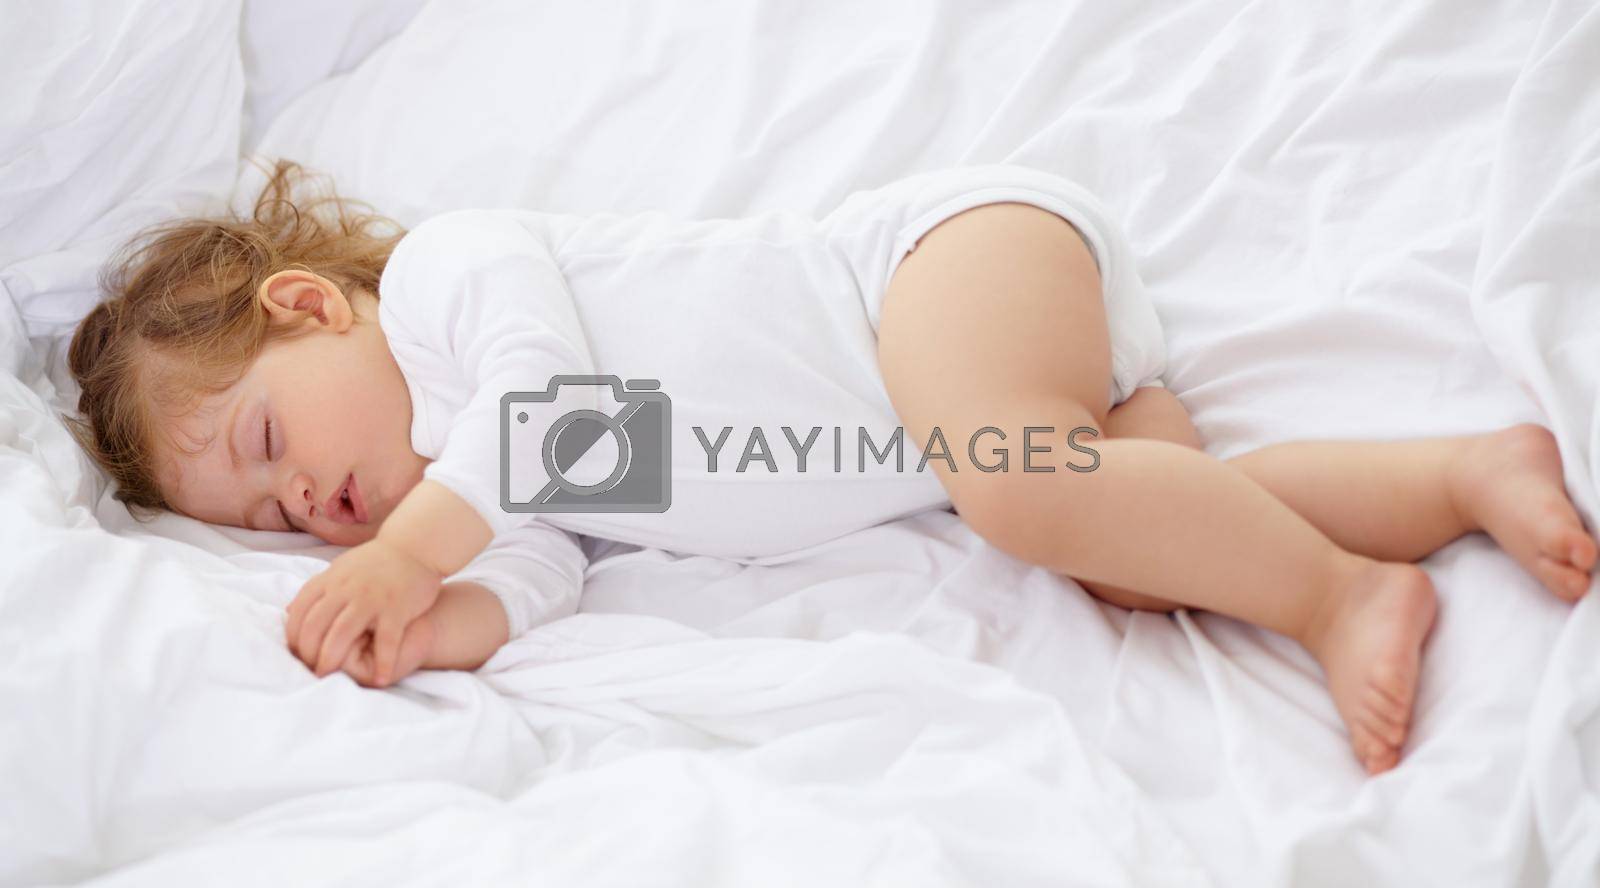 Babies need a lot of sleep. An adorable baby sleeping in the bedroom